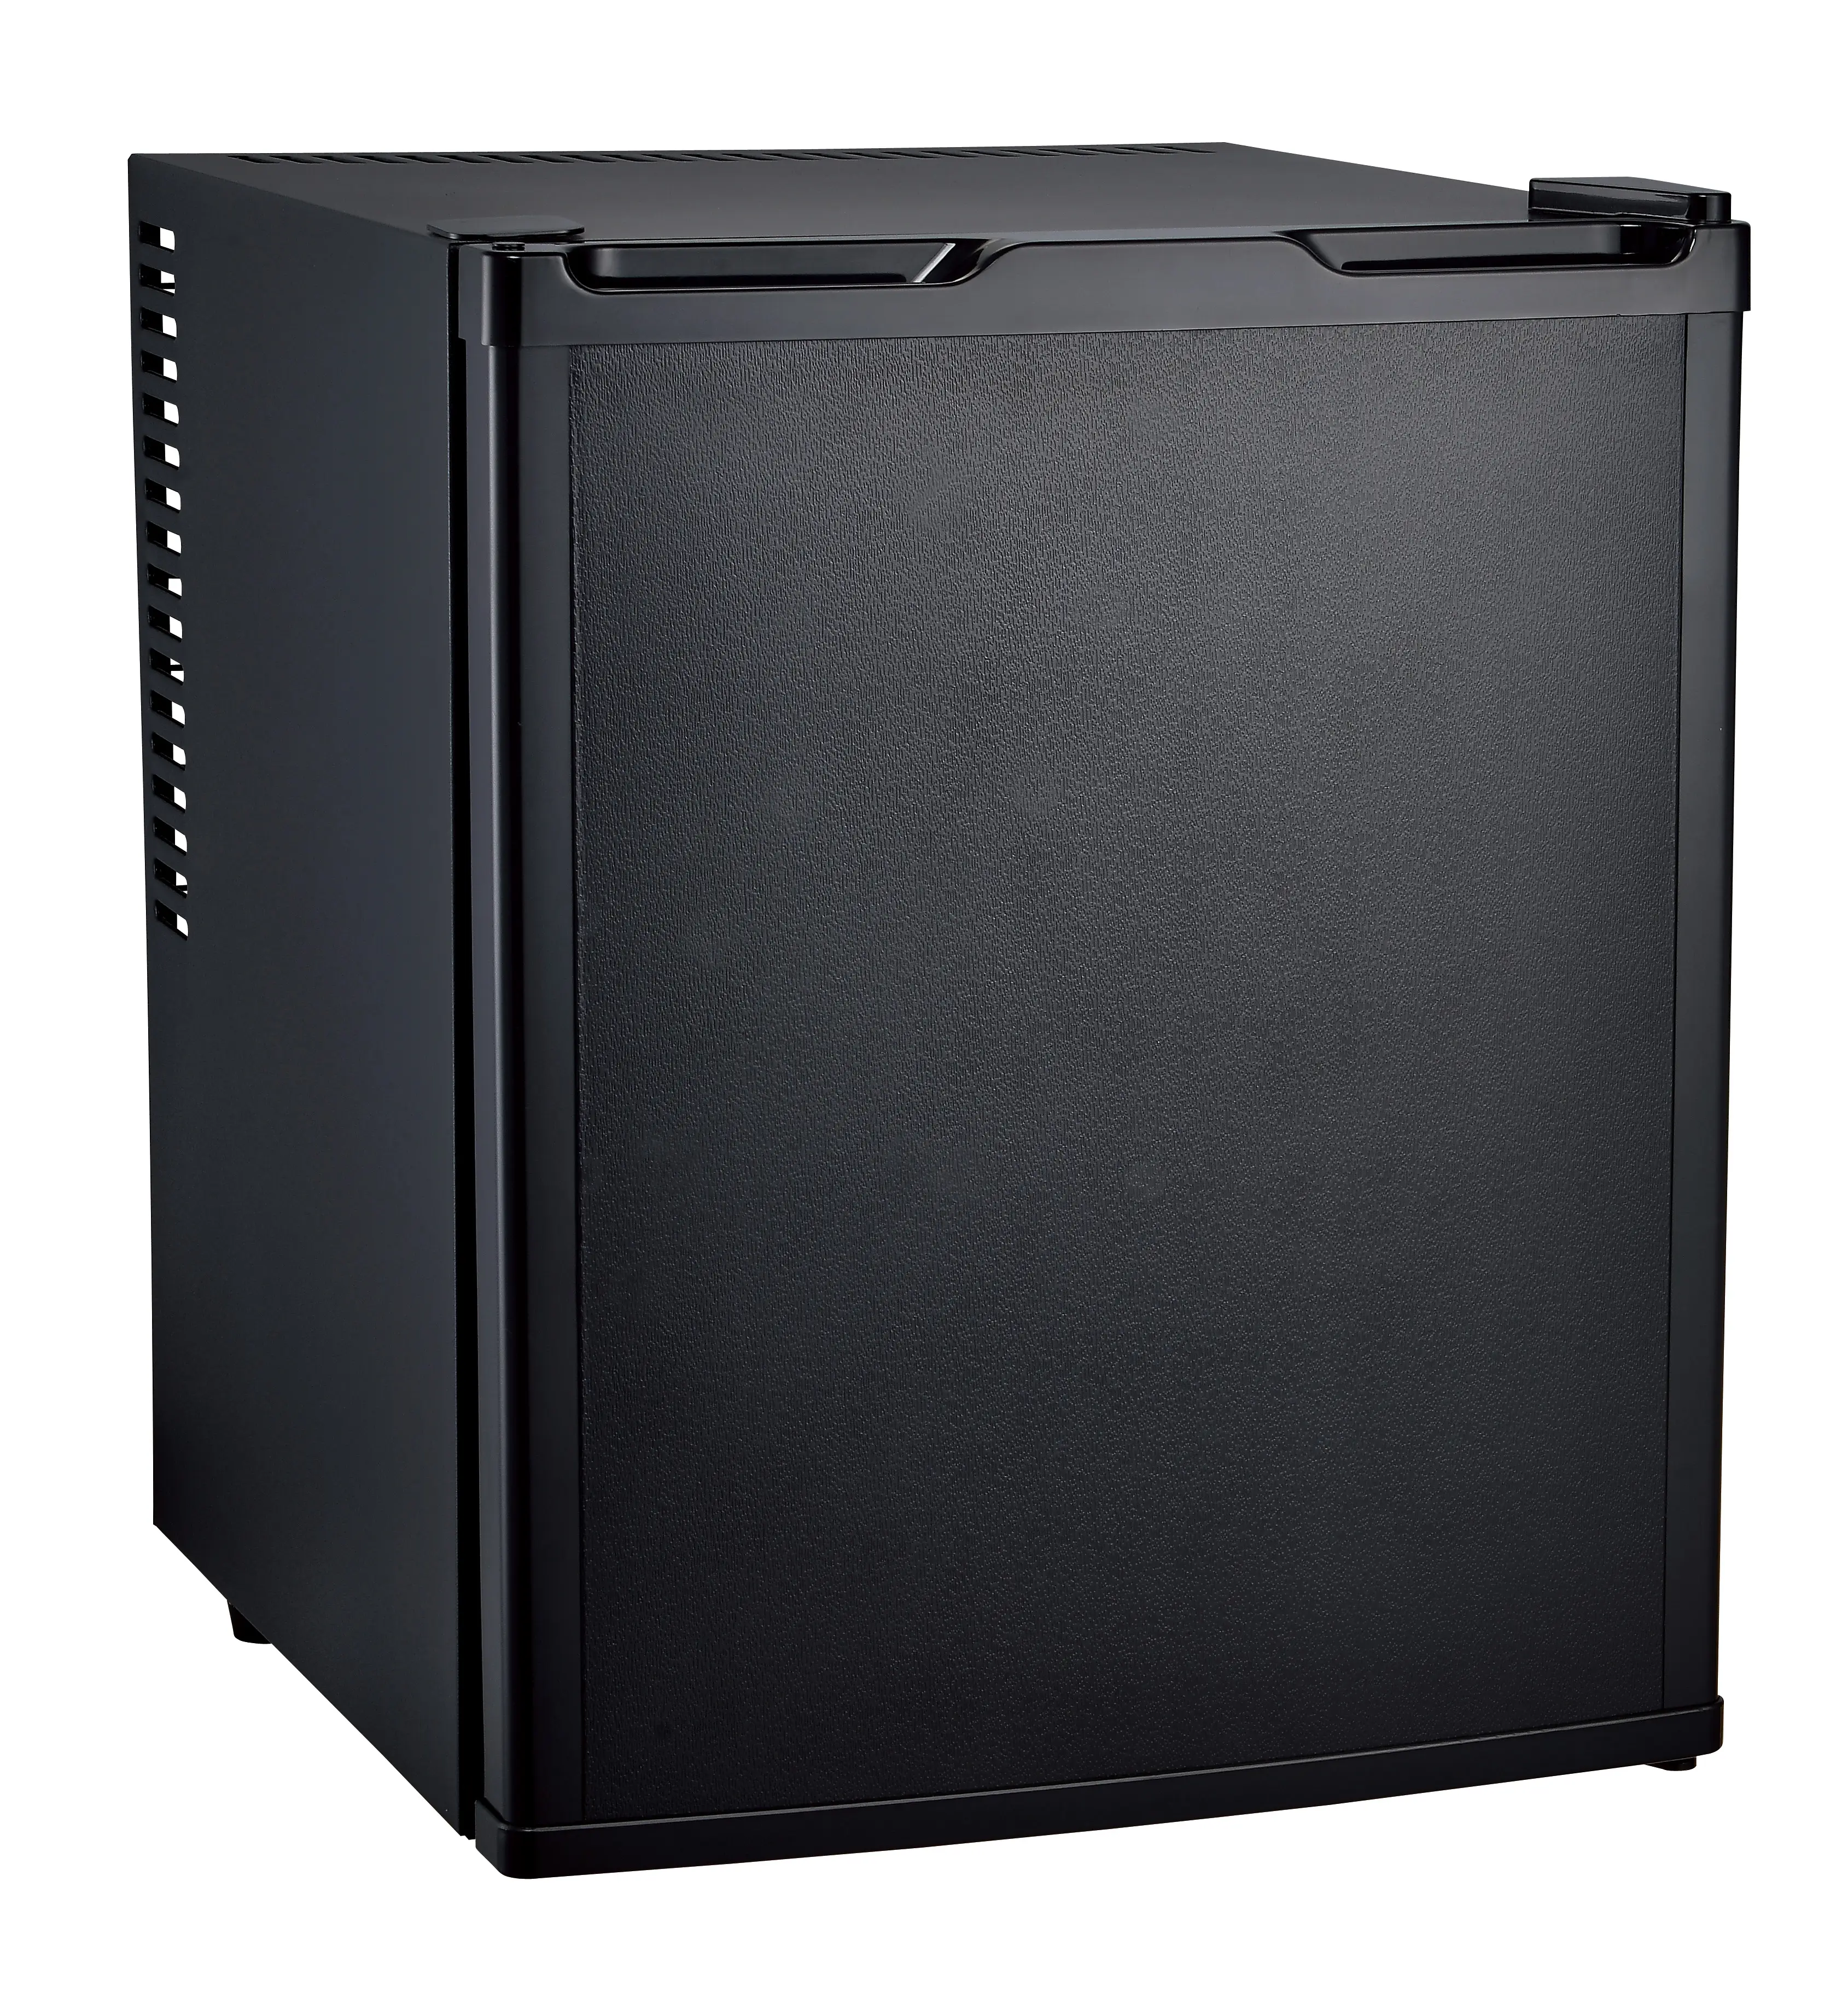 35L semi-condenser minibar,35L semi-condenser mini bar, 35Lsemi-condenser mini fridge with black color